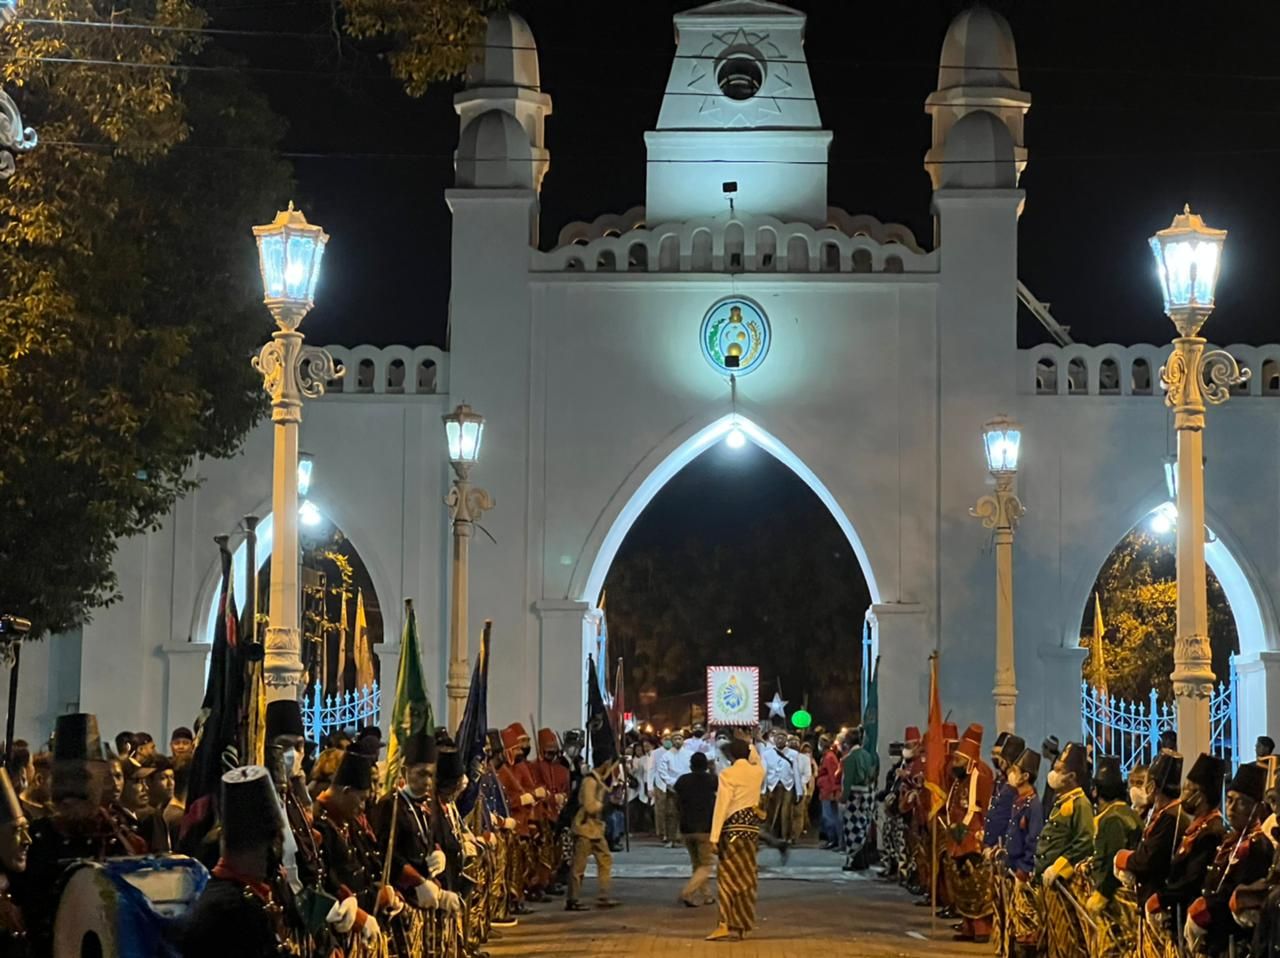 Tradisi Malam Selikuran Lembaga Dewan Adat Keraton Surakarta di Ikuti Ribuan Orang dan Berlangsung Khidmat